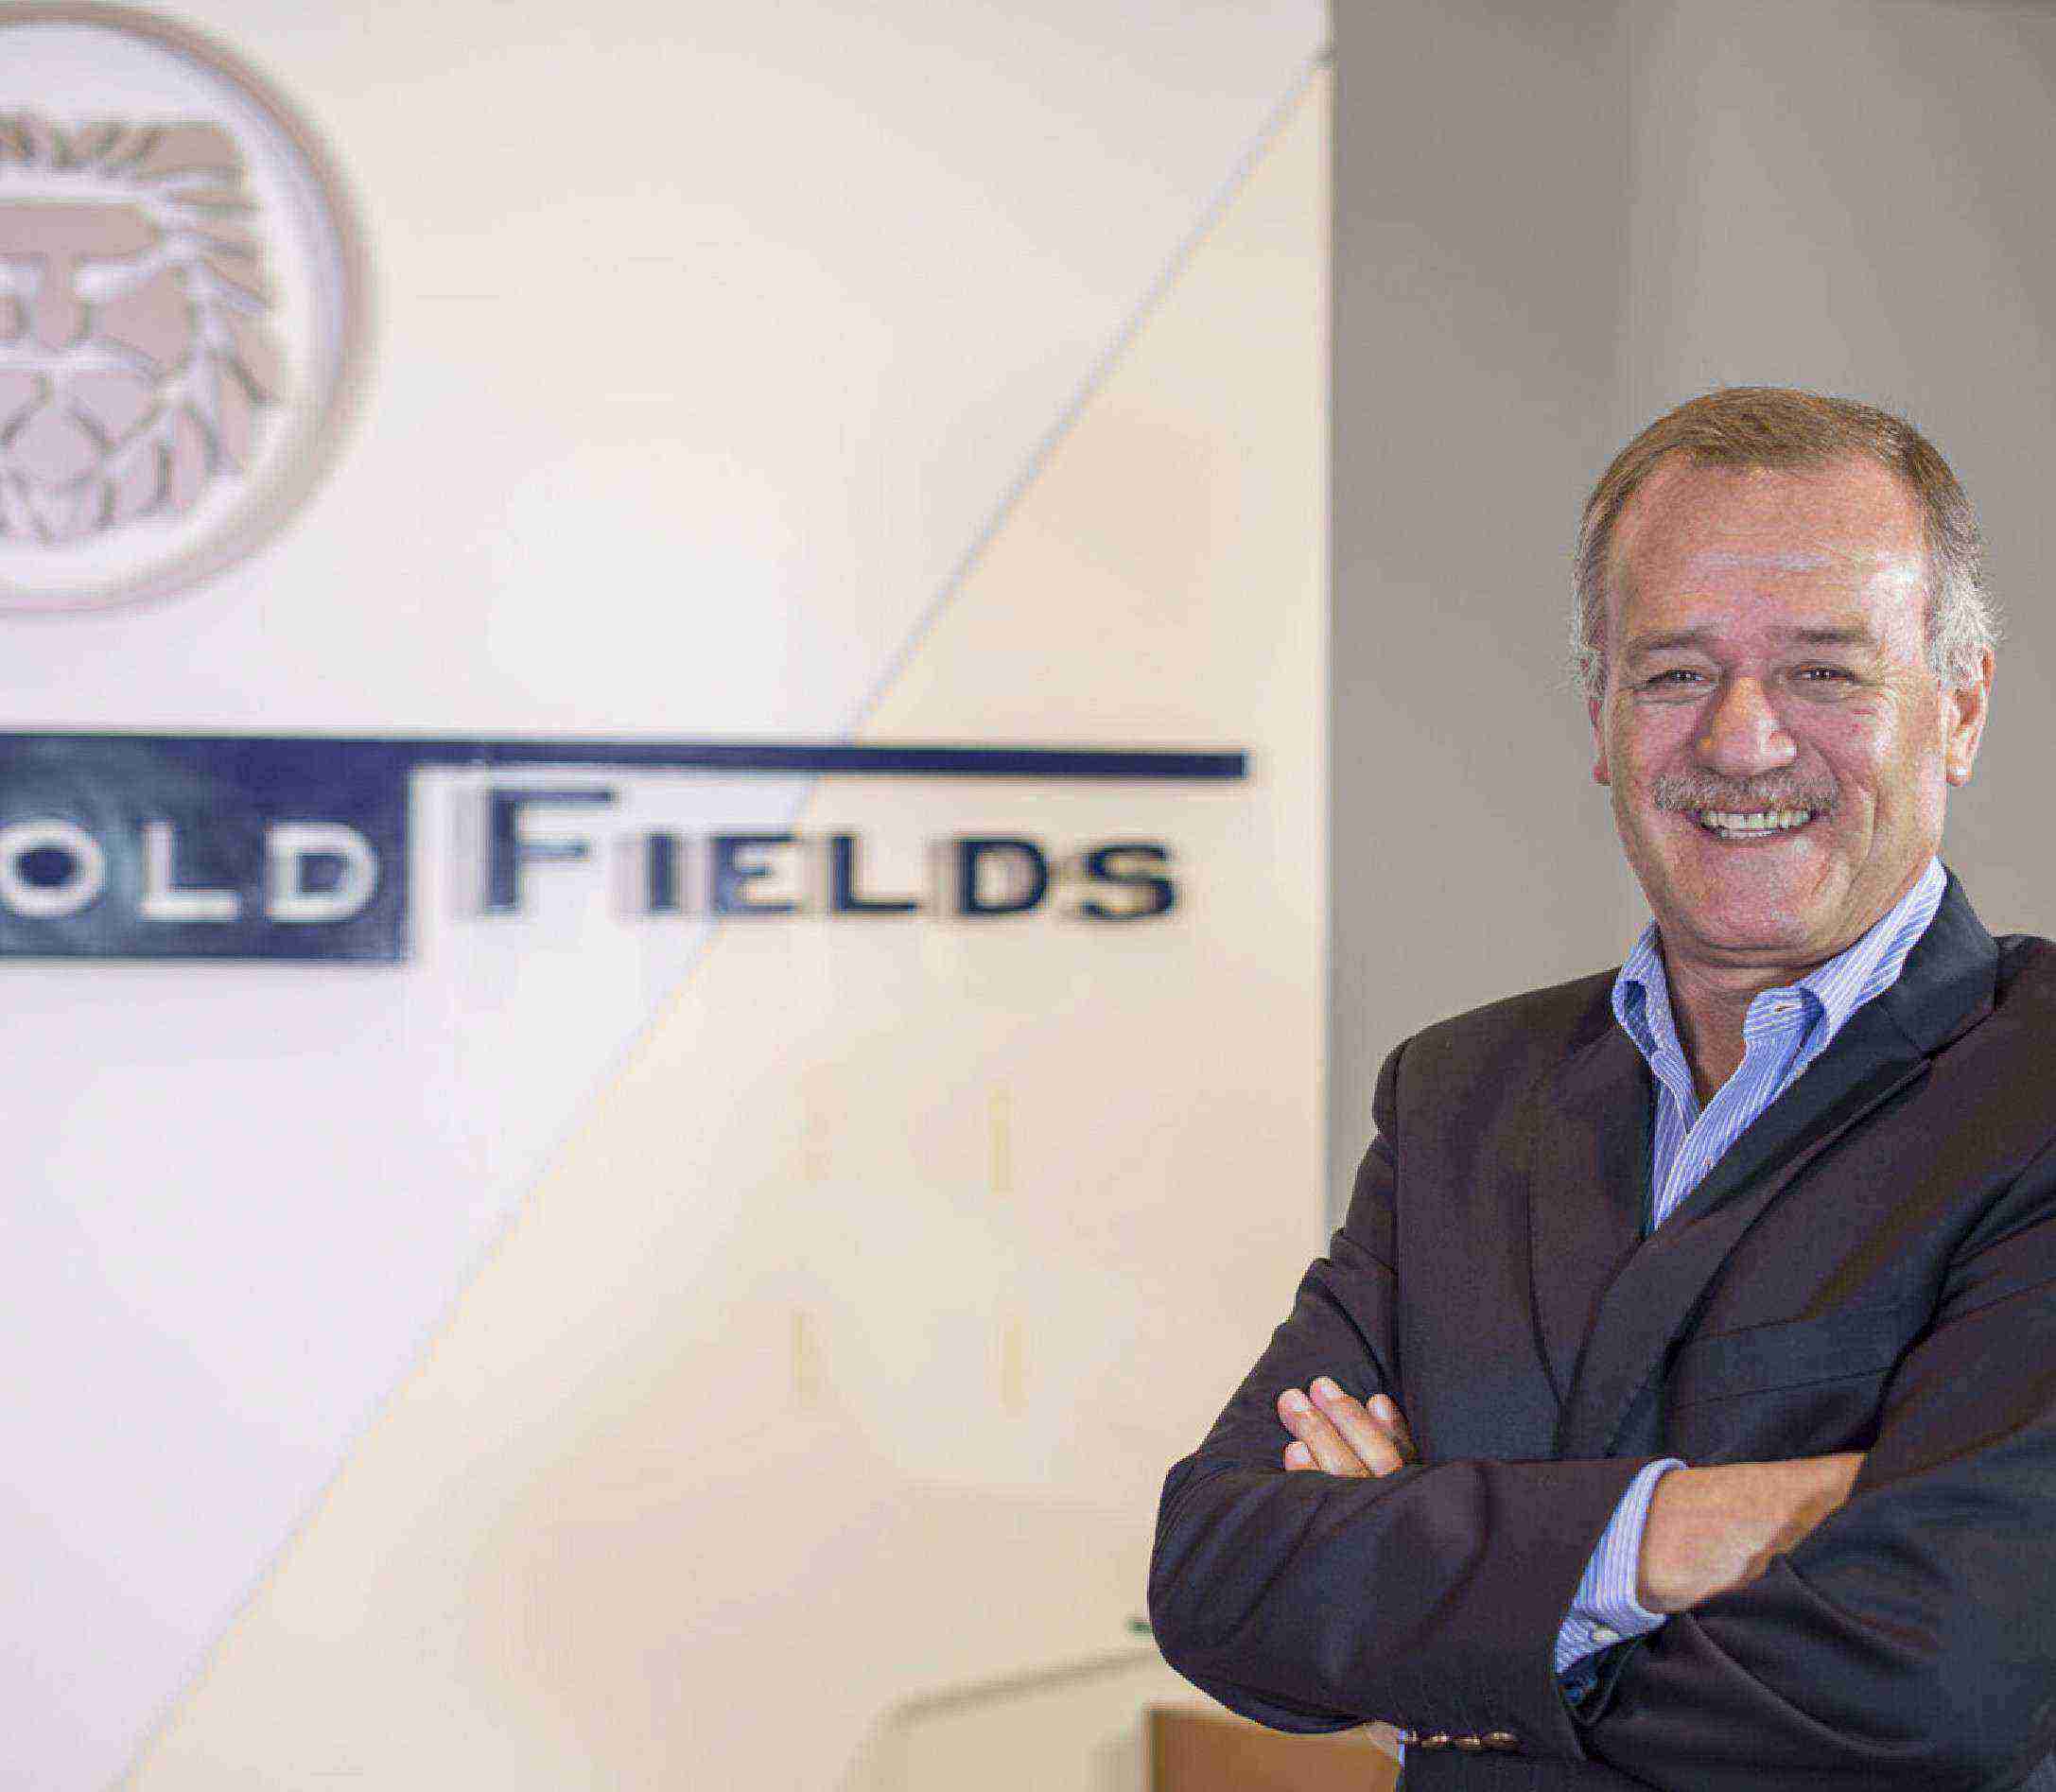 Rafael Sáenz: Gold Fields posee más de 250 proyectos innovadores relacionados con la excelencia operativa